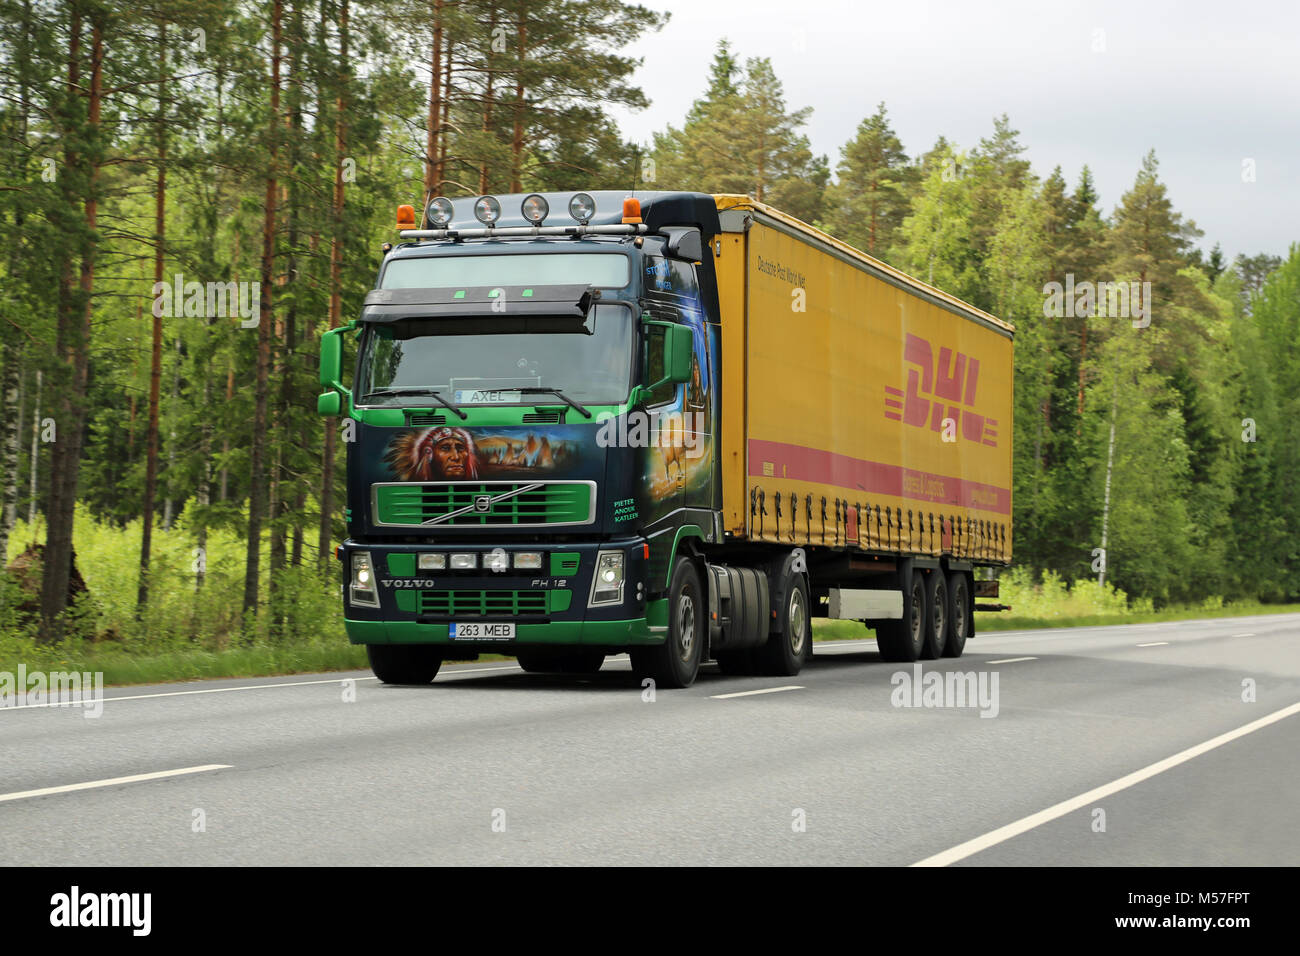 KOSKI, Finnland - 1. JUNI 2014: schön bemalte Volvo FH 12 Lkw auf der Straße. Die meisten der ausführlichen Designs auf Lastwagen werden durch Airbrush vehicl erstellt Stockfoto